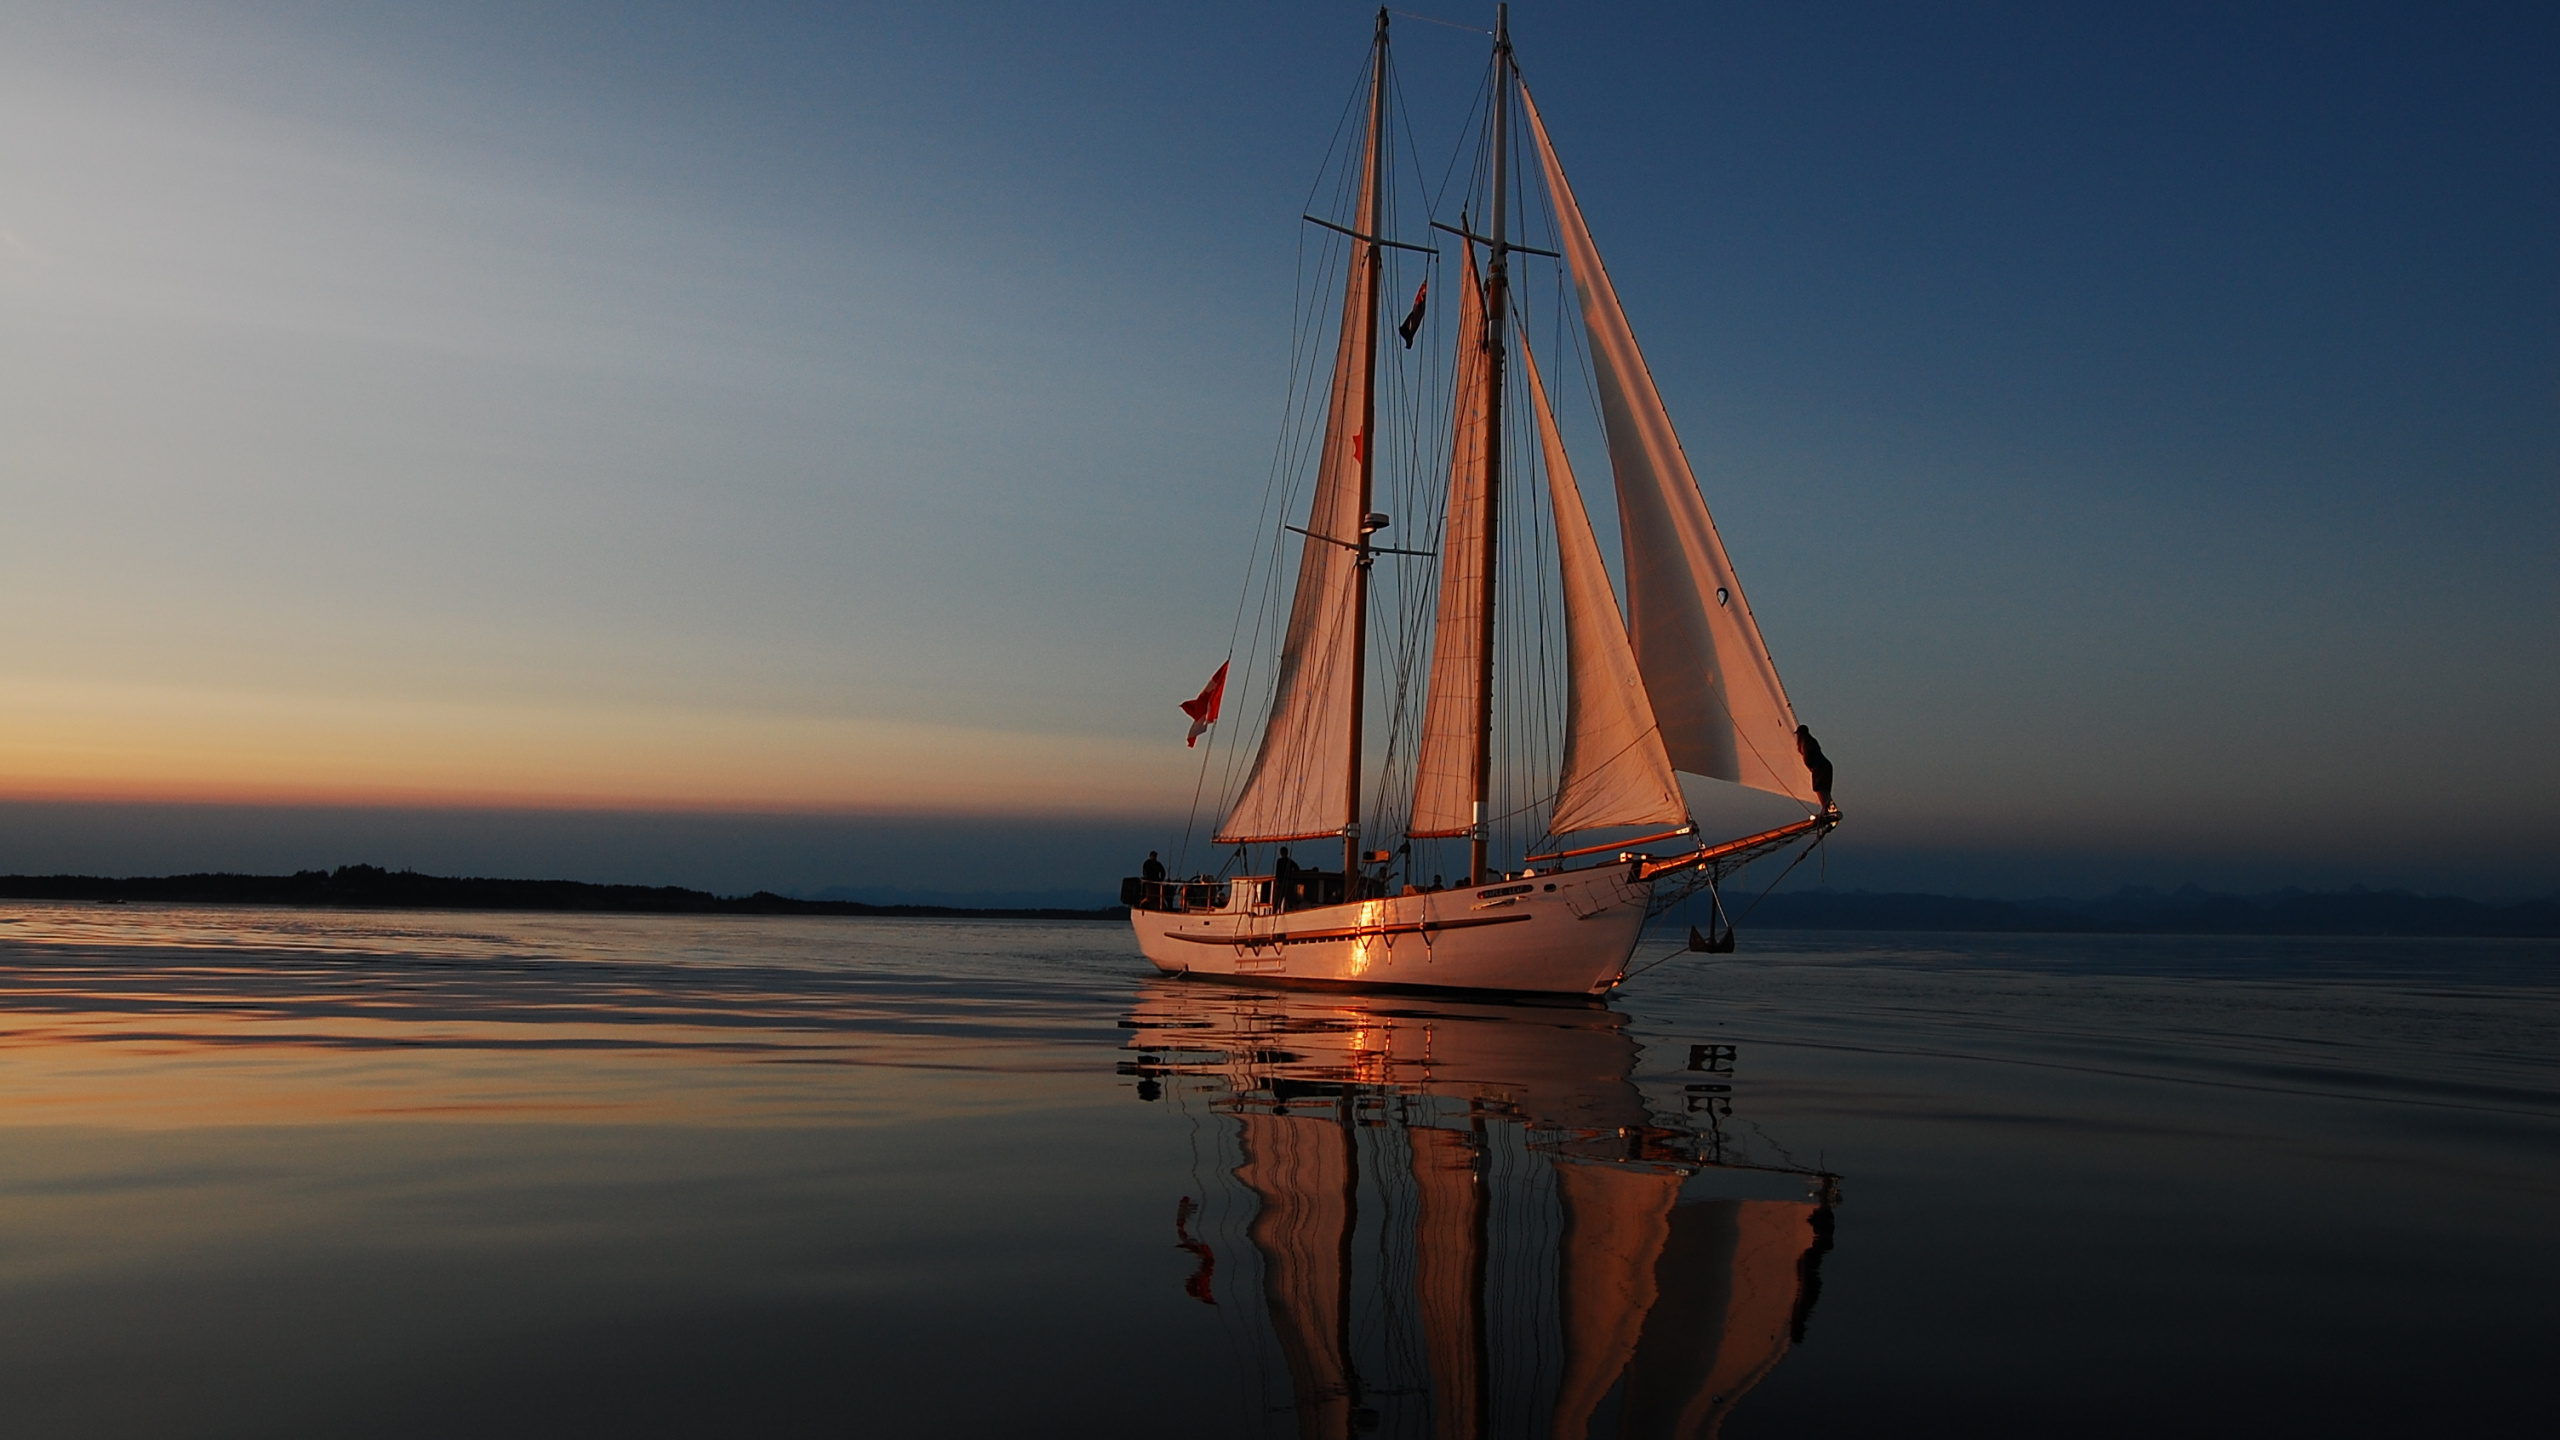 Weißes Segelboot Auf Dem Meer Bei Sonnenuntergang. Wallpaper in 2560x1440 Resolution